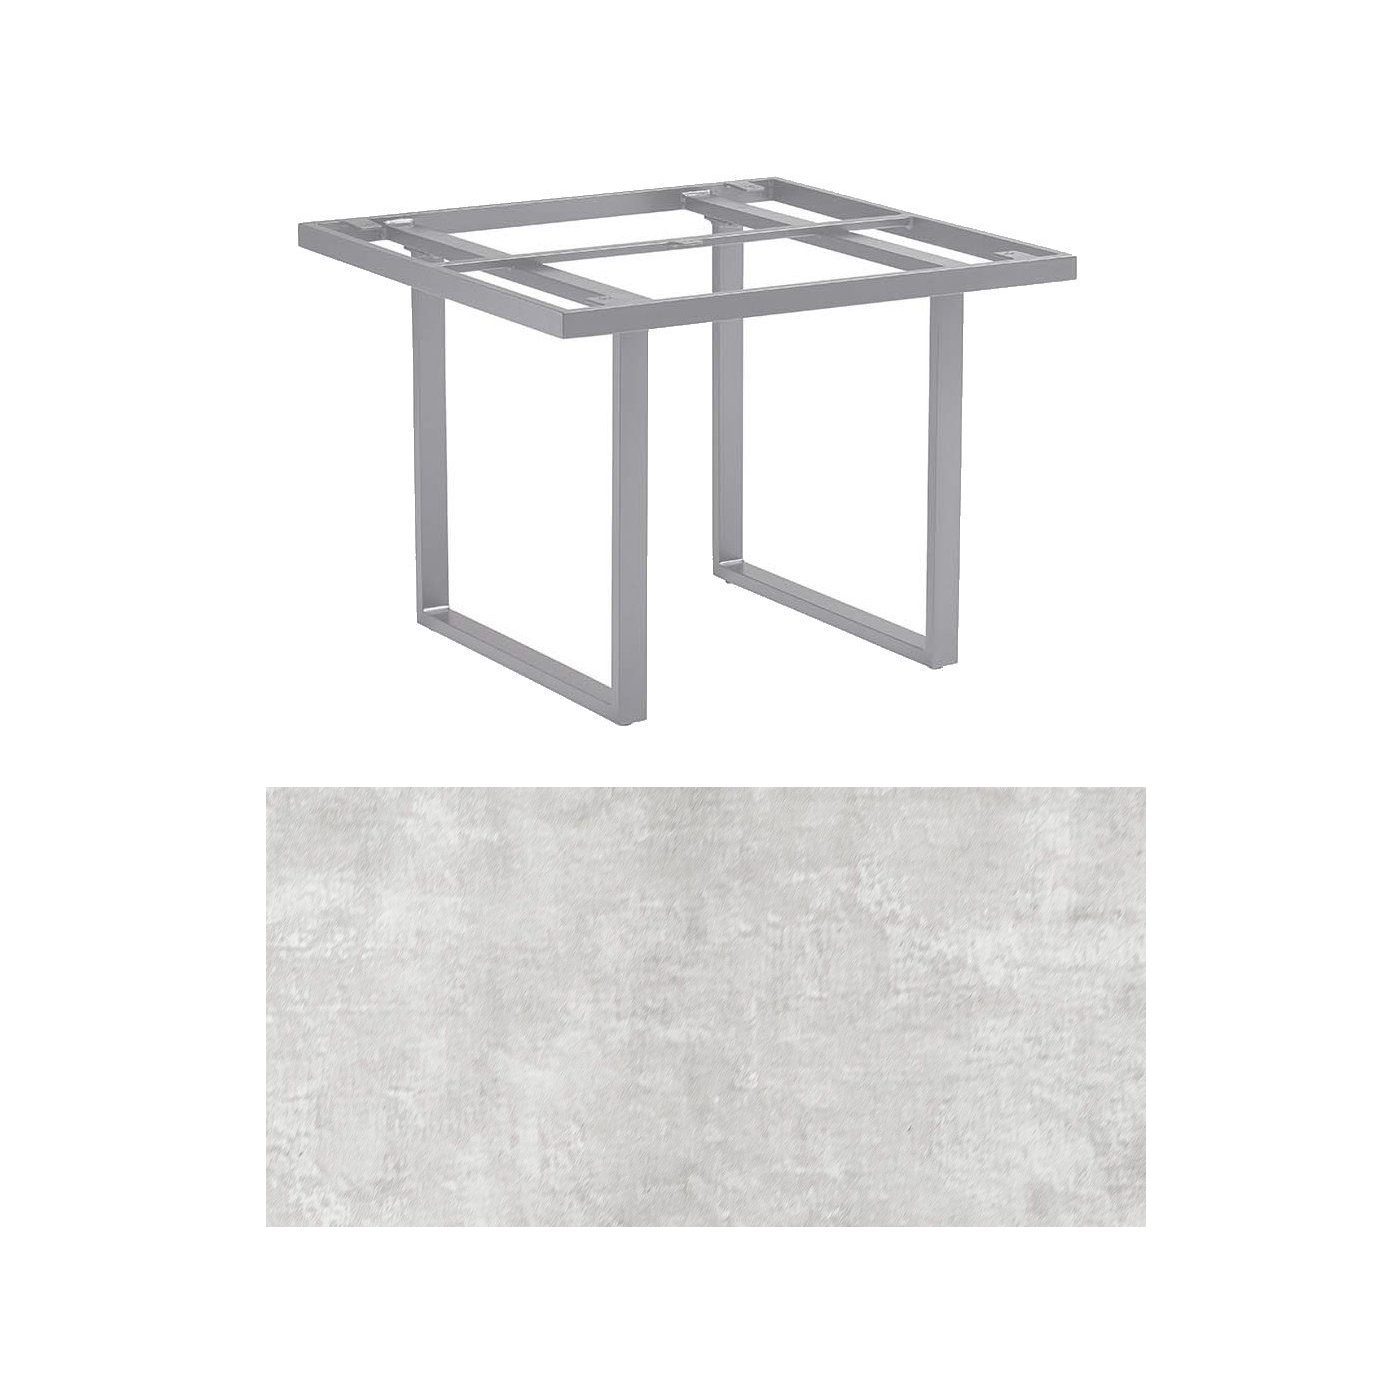 Kettler "Skate" Gartentisch Casual Dining, Gestell Aluminium silber, Tischplatte HPL hellgrau meliert, 95x95 cm, Höhe ca. 68 cm